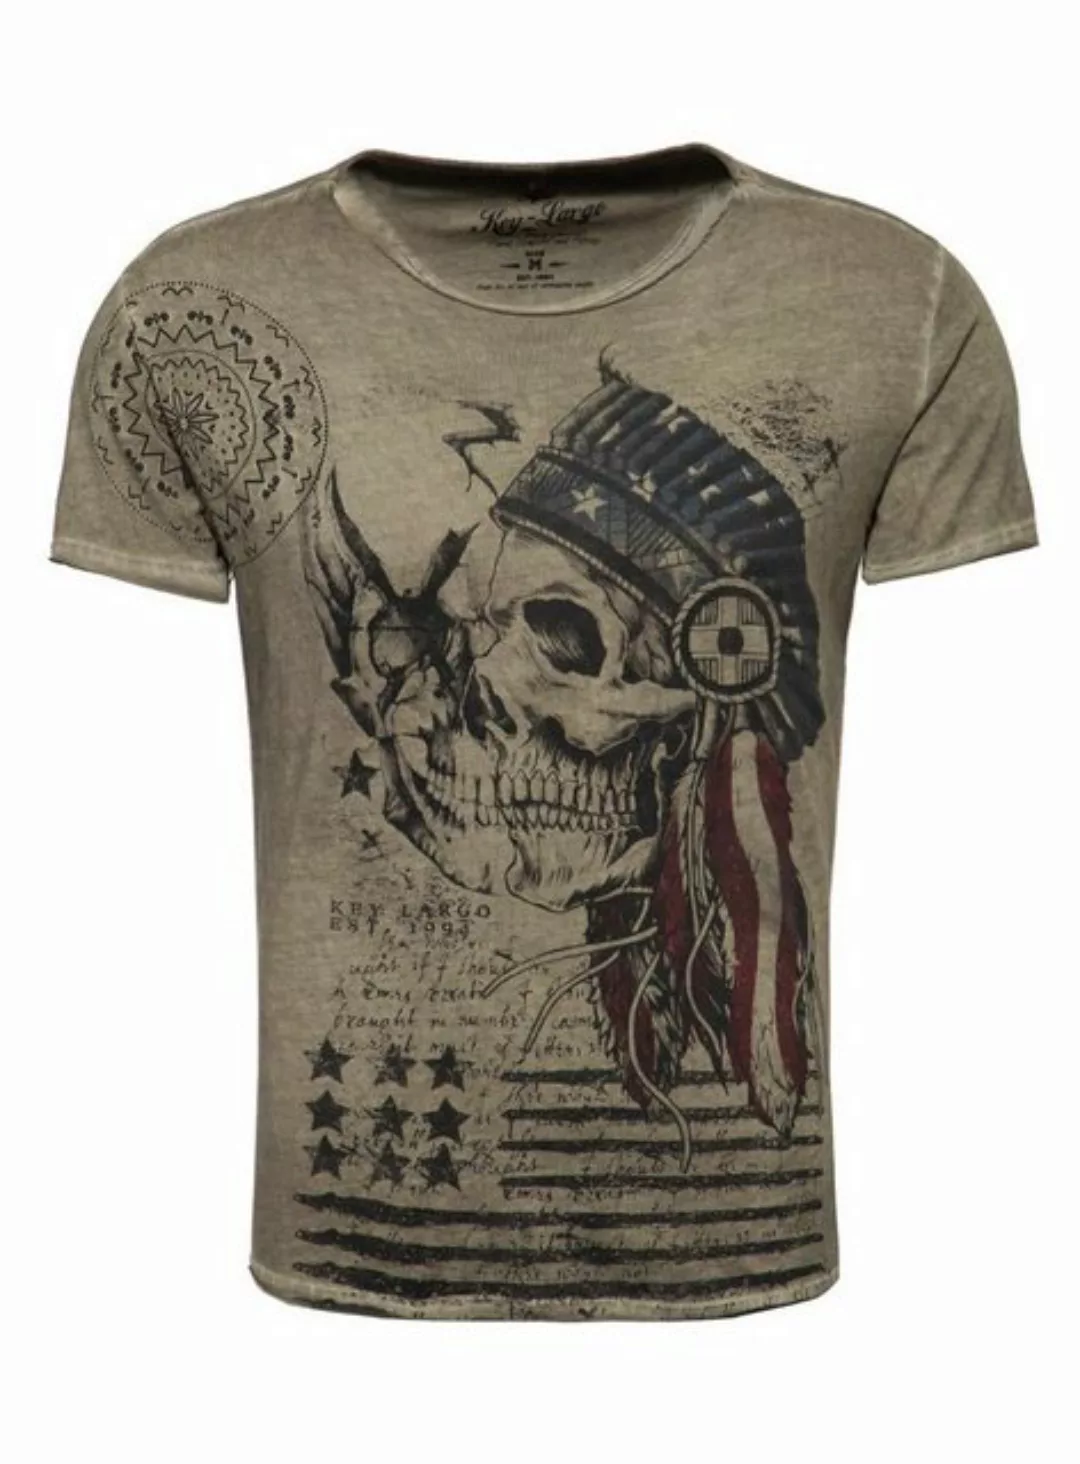 Key Largo T-Shirt T-Shirt Indian Skull Totenkopf Print Motiv vintage Look M günstig online kaufen